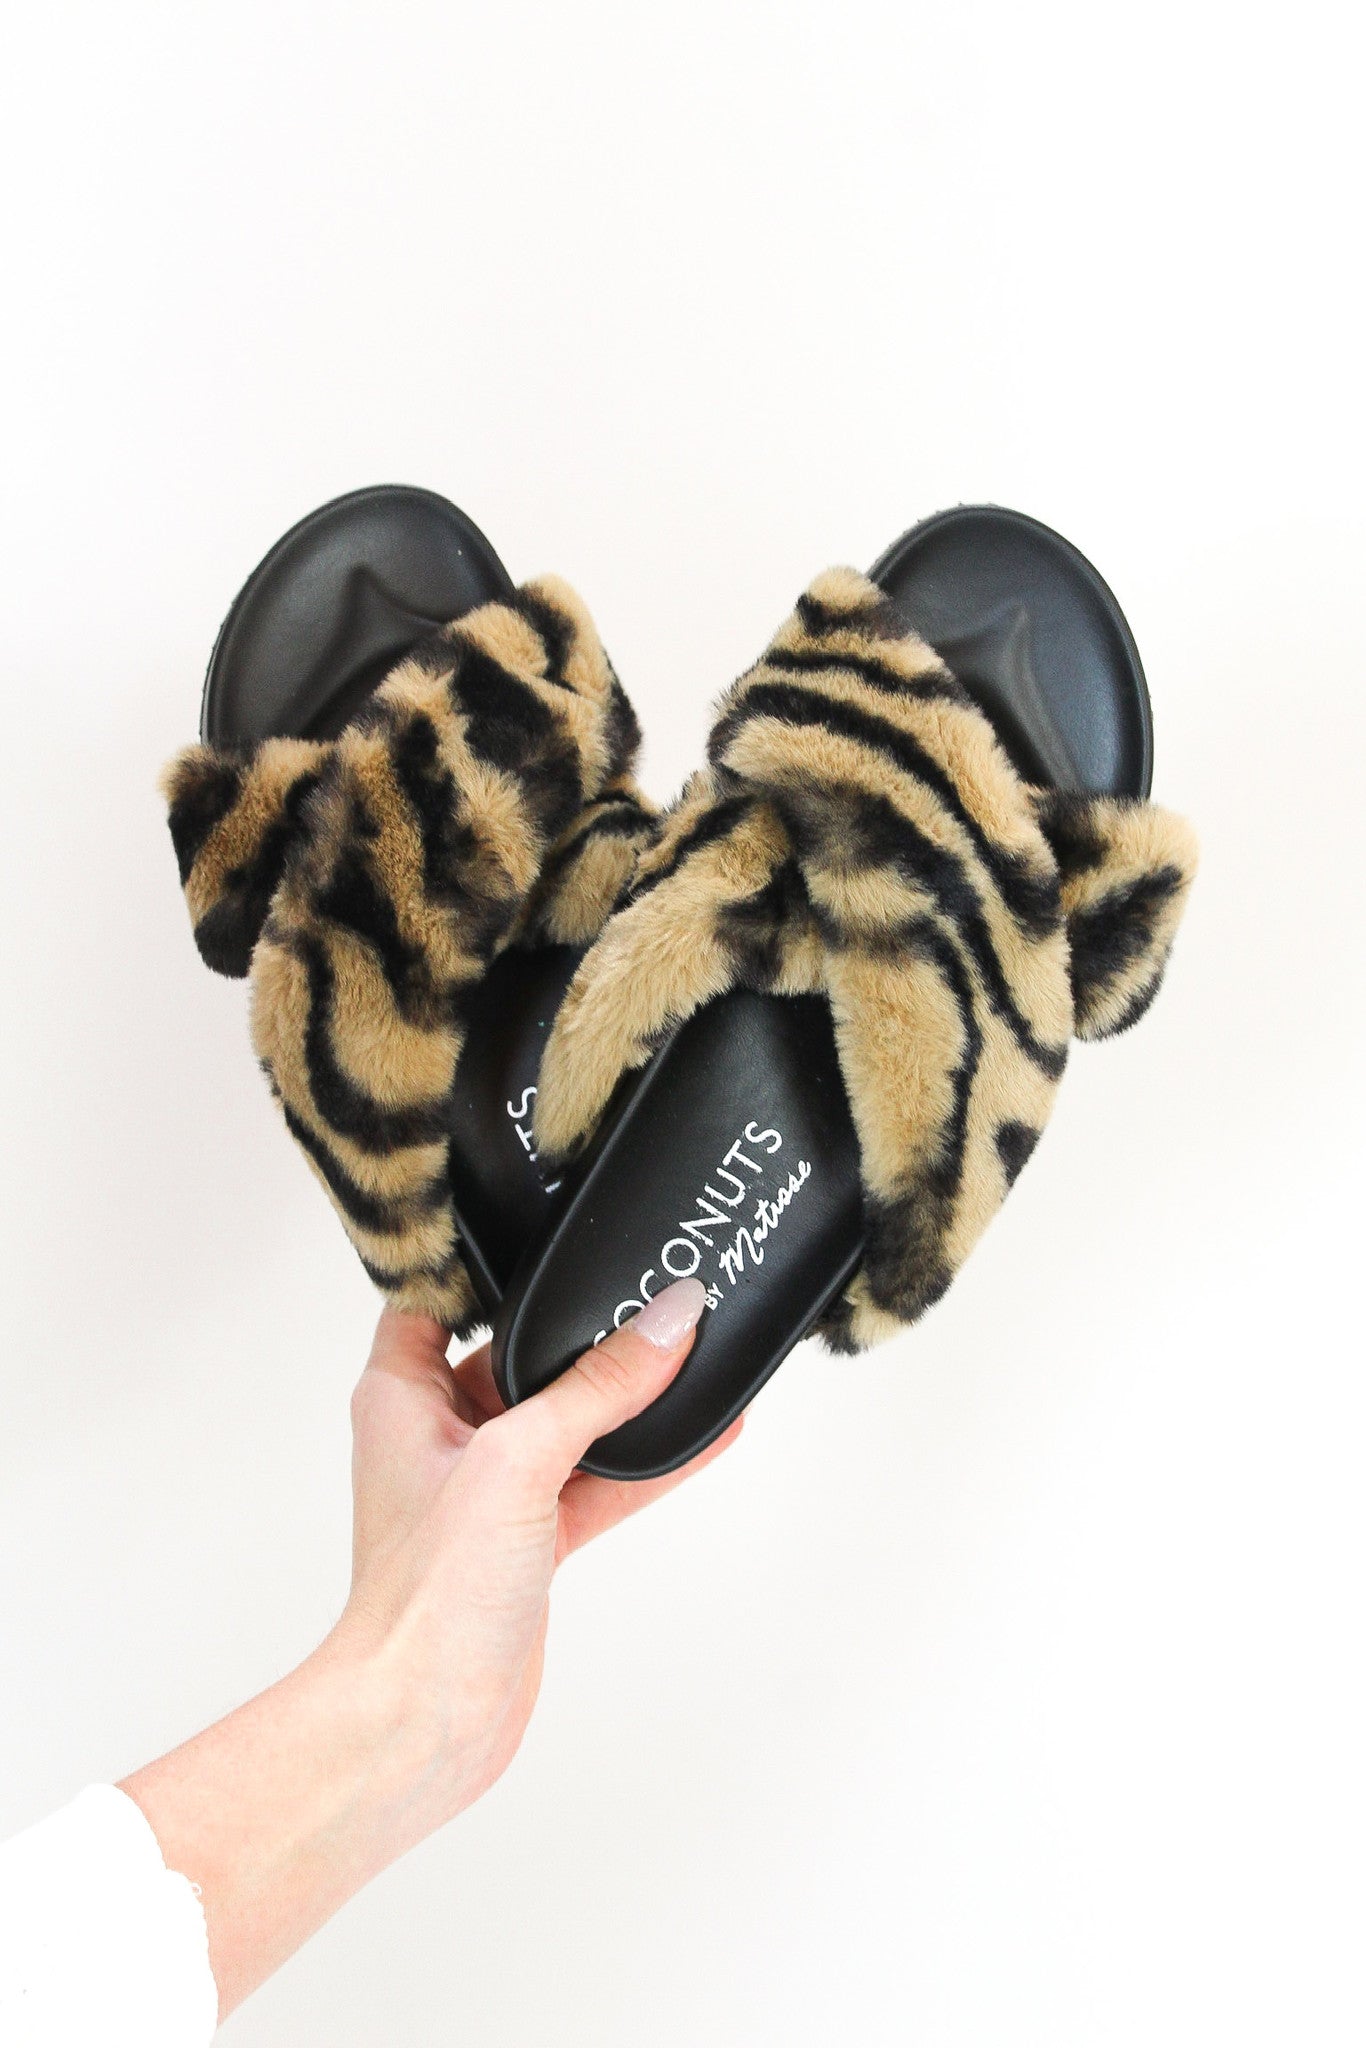 Chilly Season Slippers - Zebra